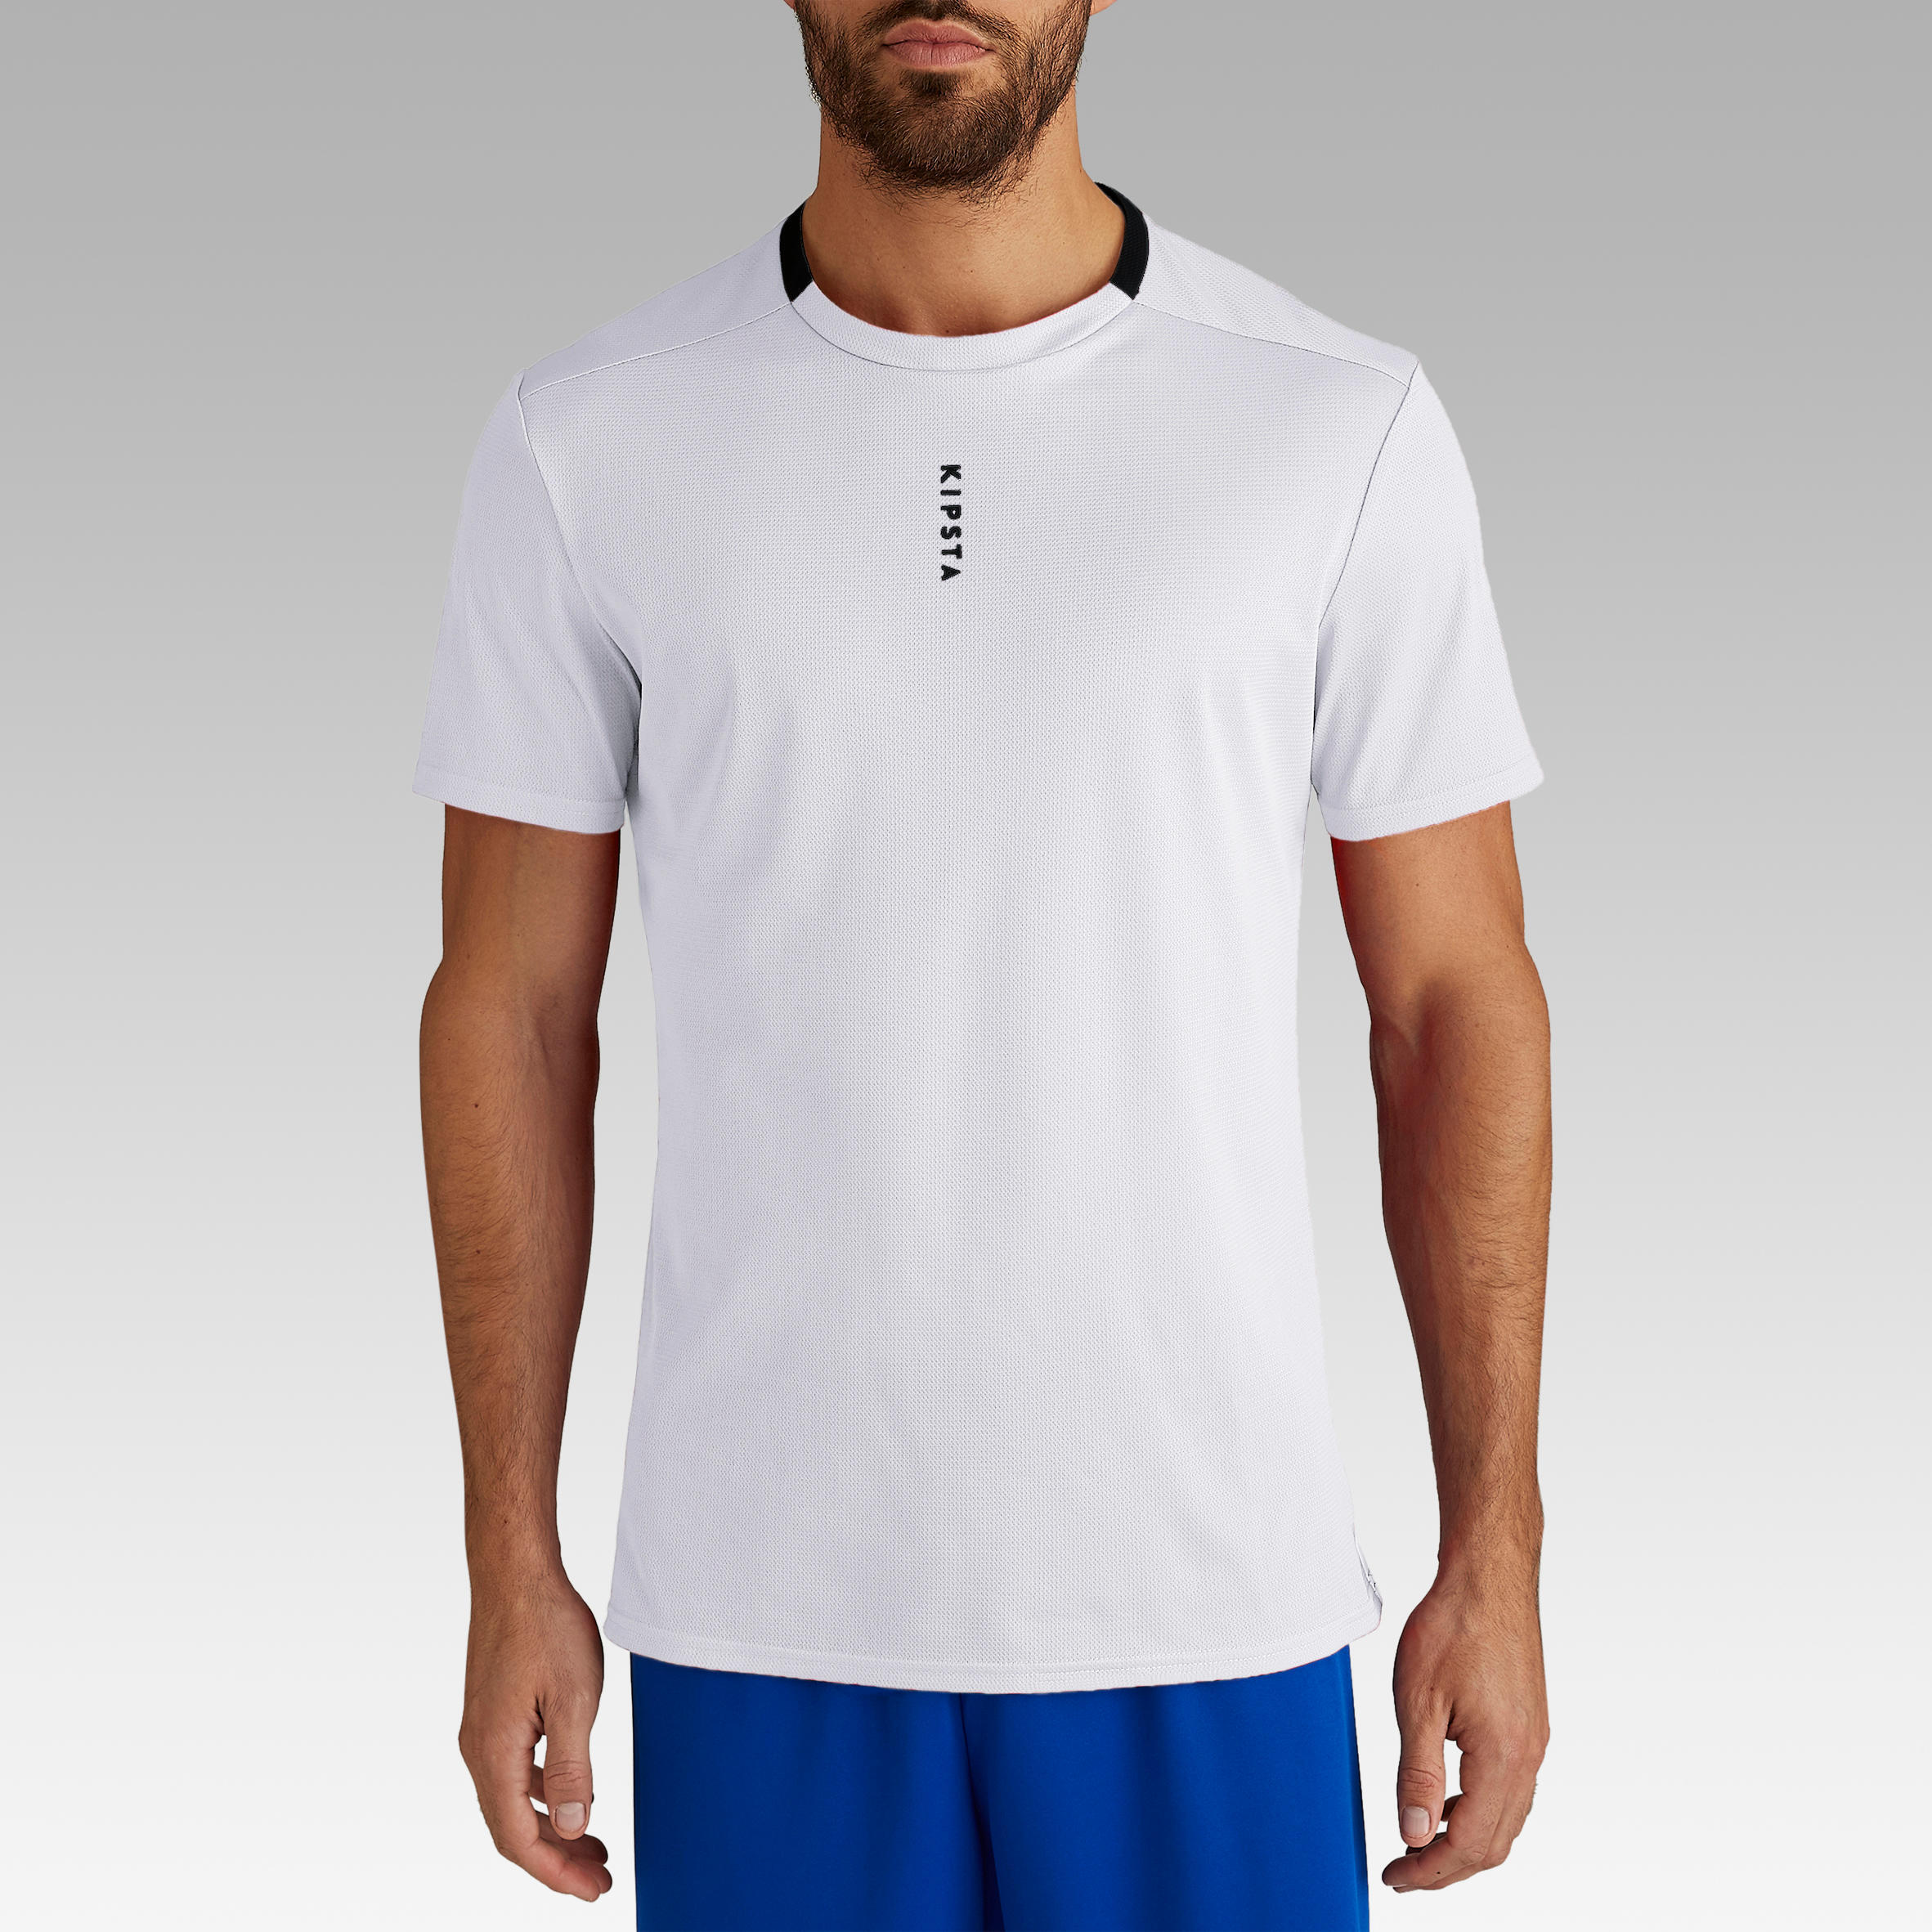 Adult Football Shirt Essential Club - White 17/29